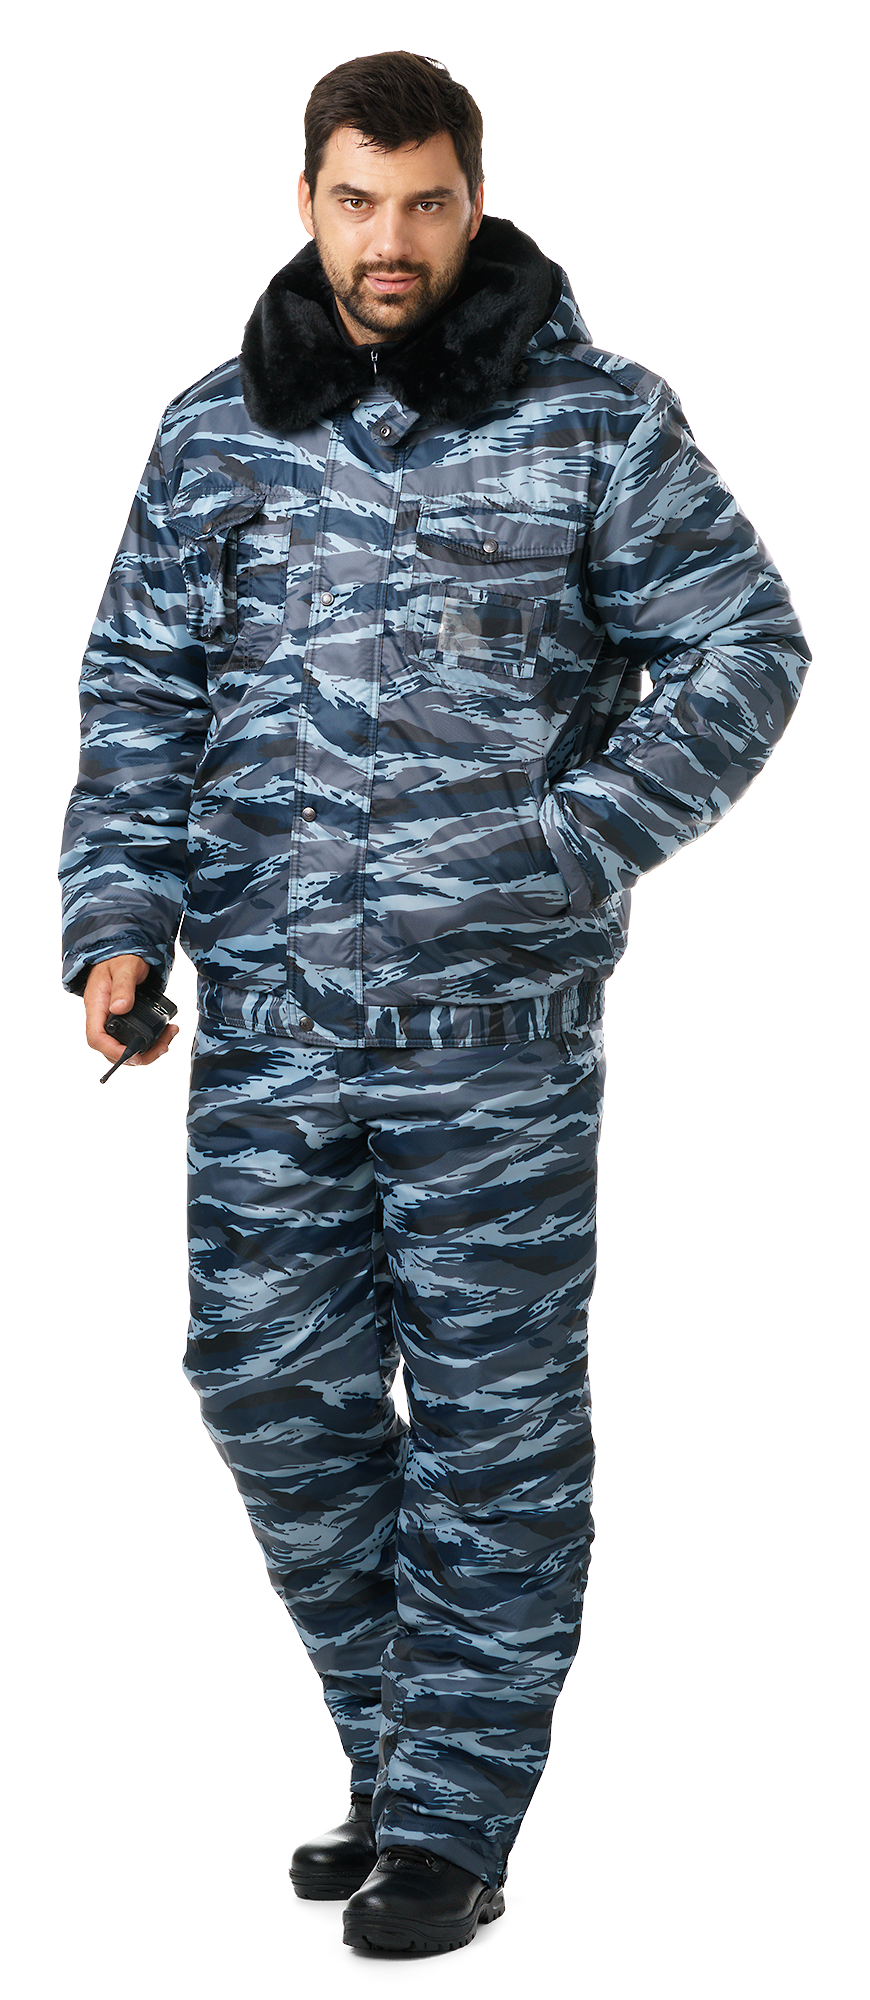  мужская зимняя камуфлированная «Секьюрити» :: Техноавиа 